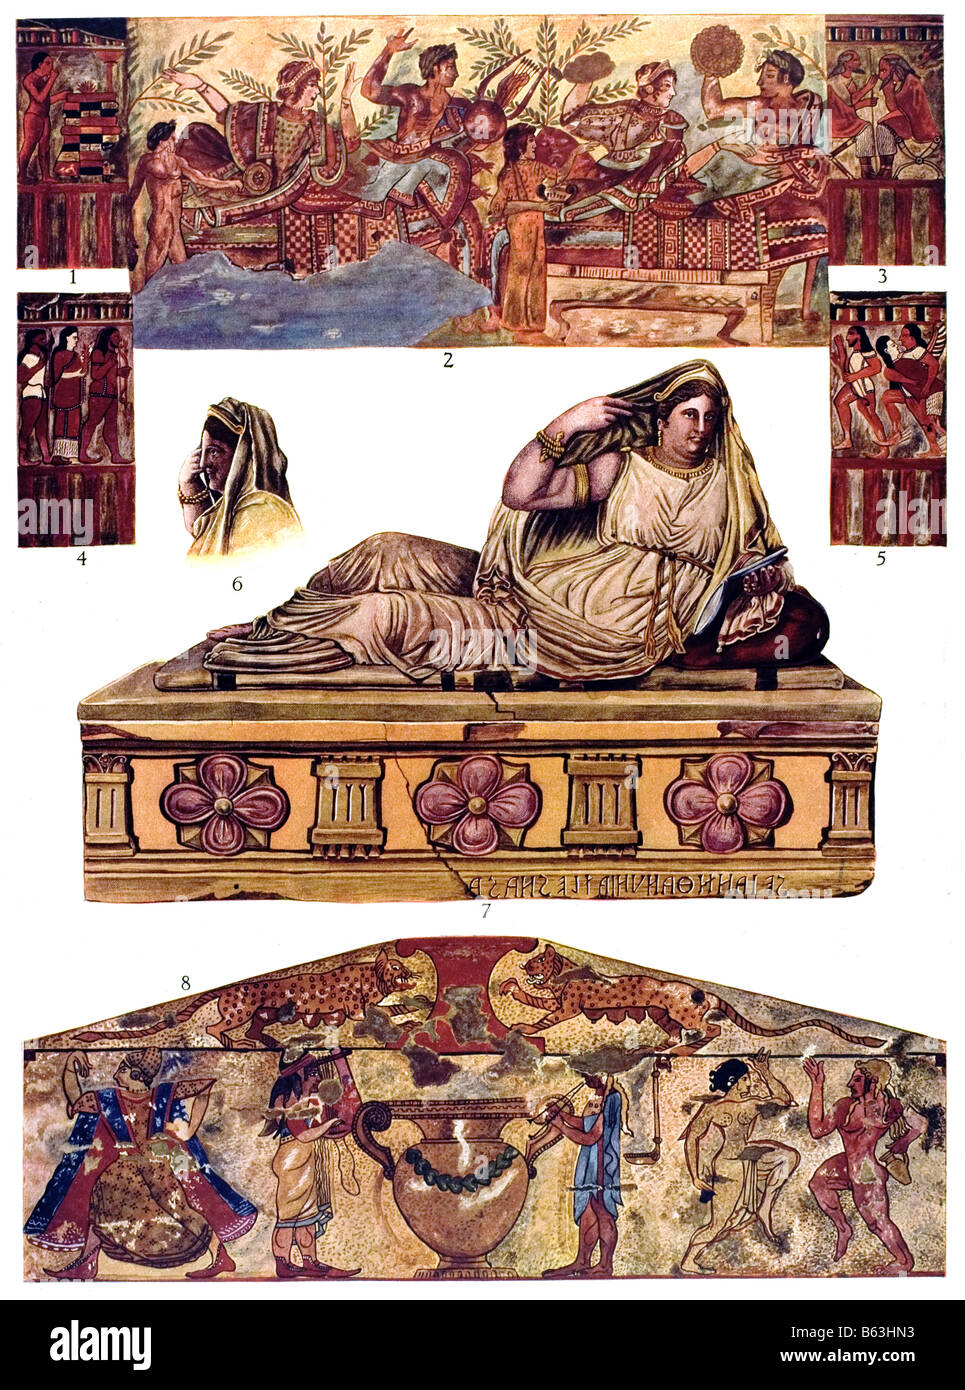 Los Etruscos Etrusca ornamento de la pintura al fresco Foto de stock